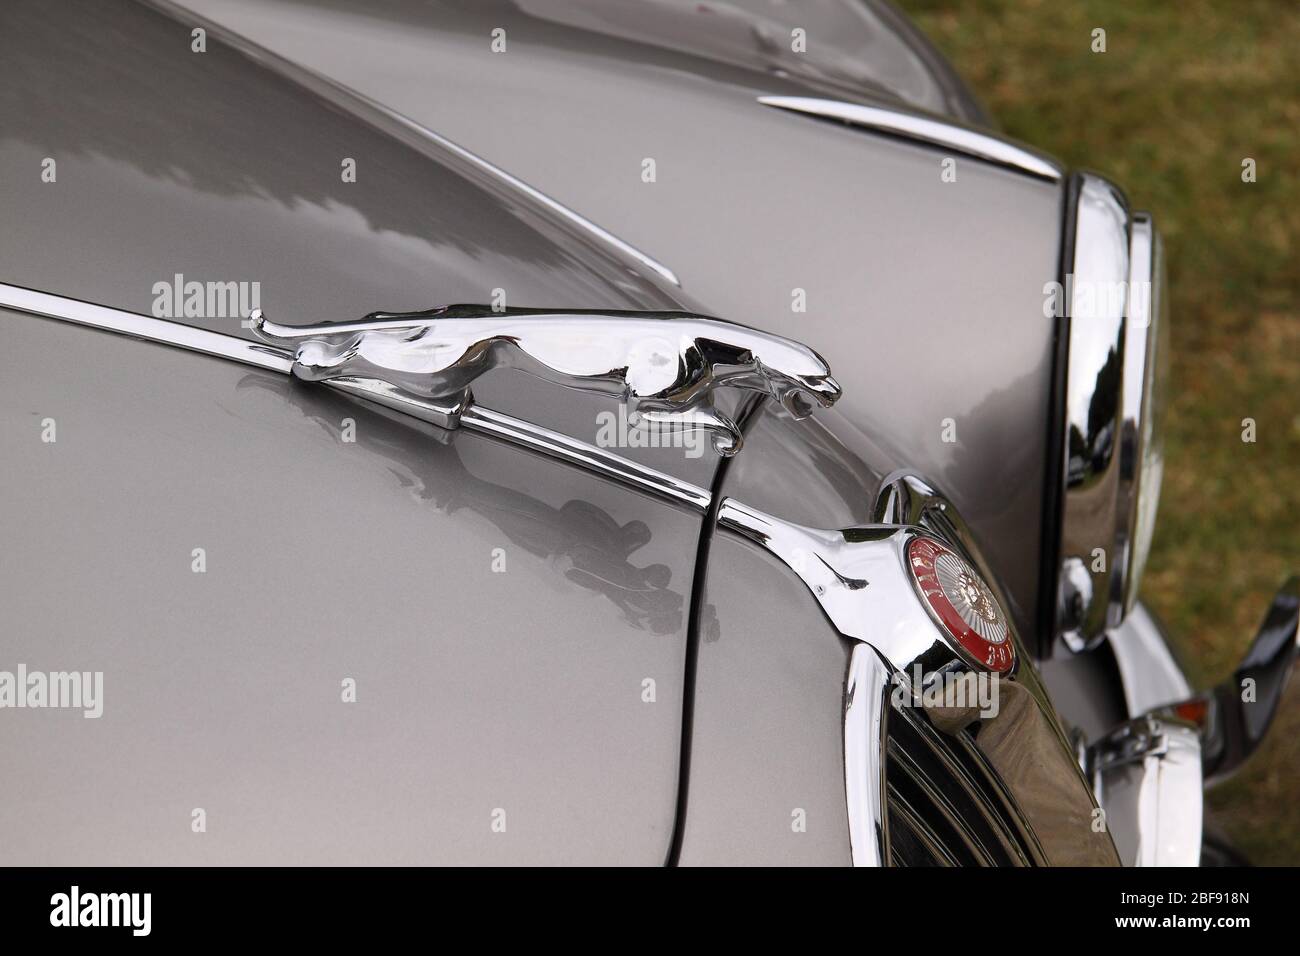 Front view of a silver classic Jaguar car bonnet emblem Stock Photo